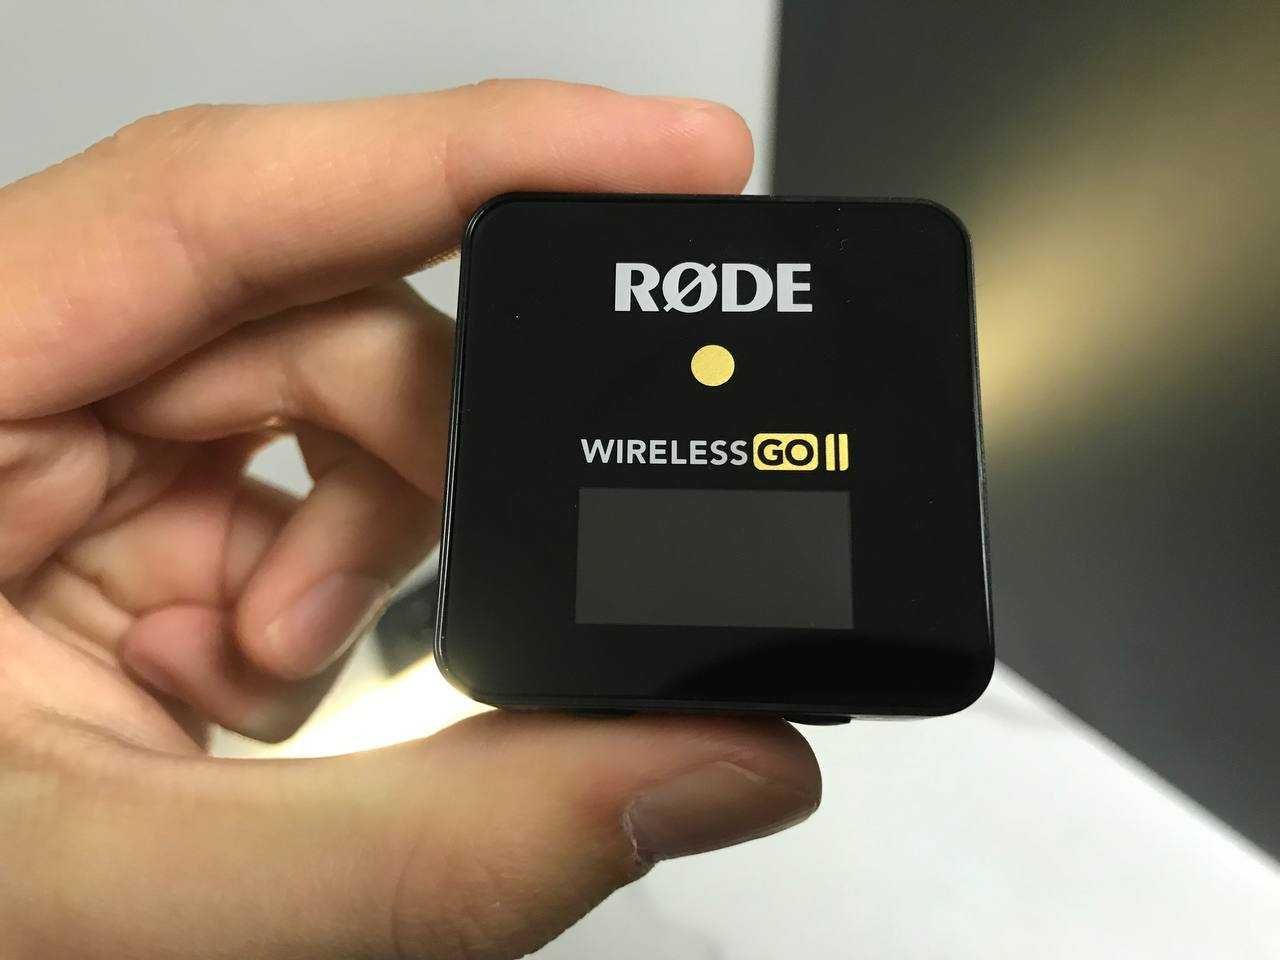 Мікрофонна система Rode Wireless GO II